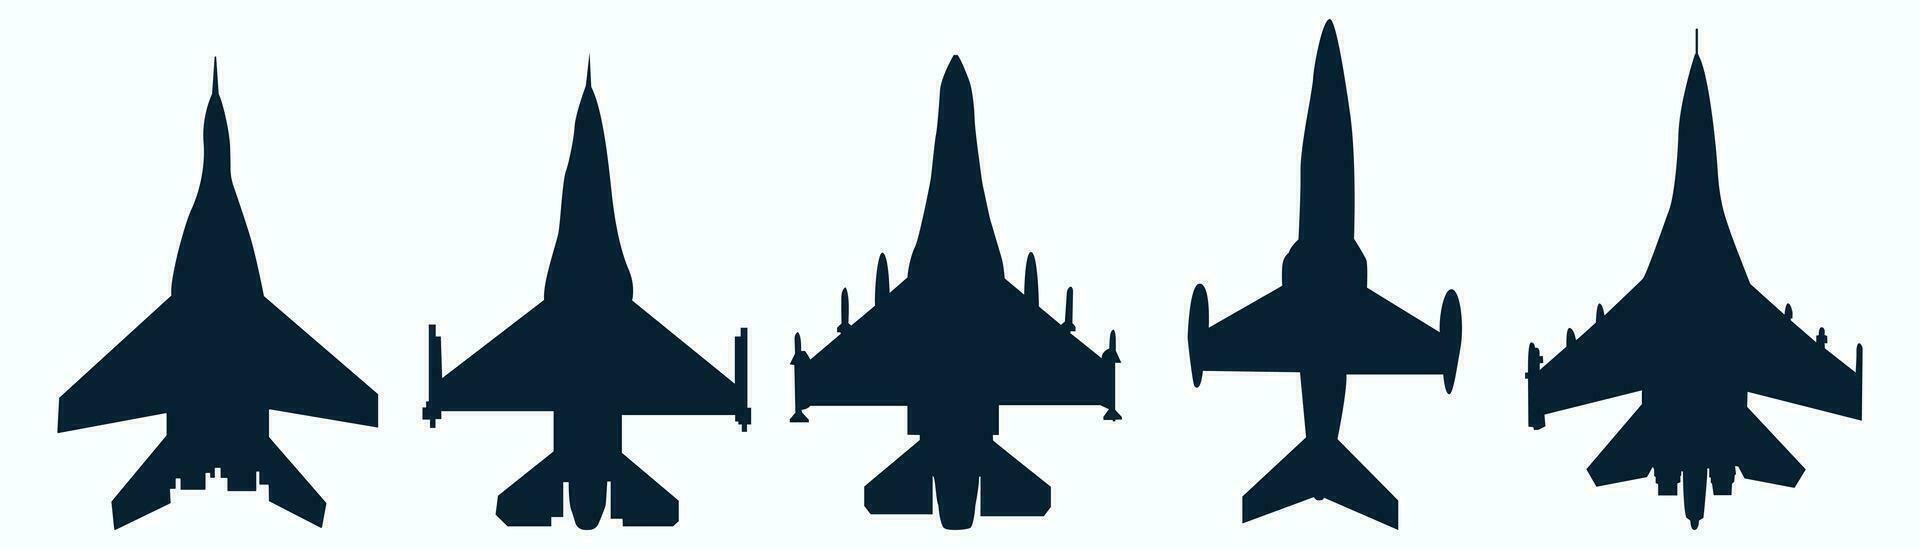 preto, avião, ícone, coleção, conjunto do Preto avião, silhueta, ícone, material, Preto aviões, jato lutador, vetor